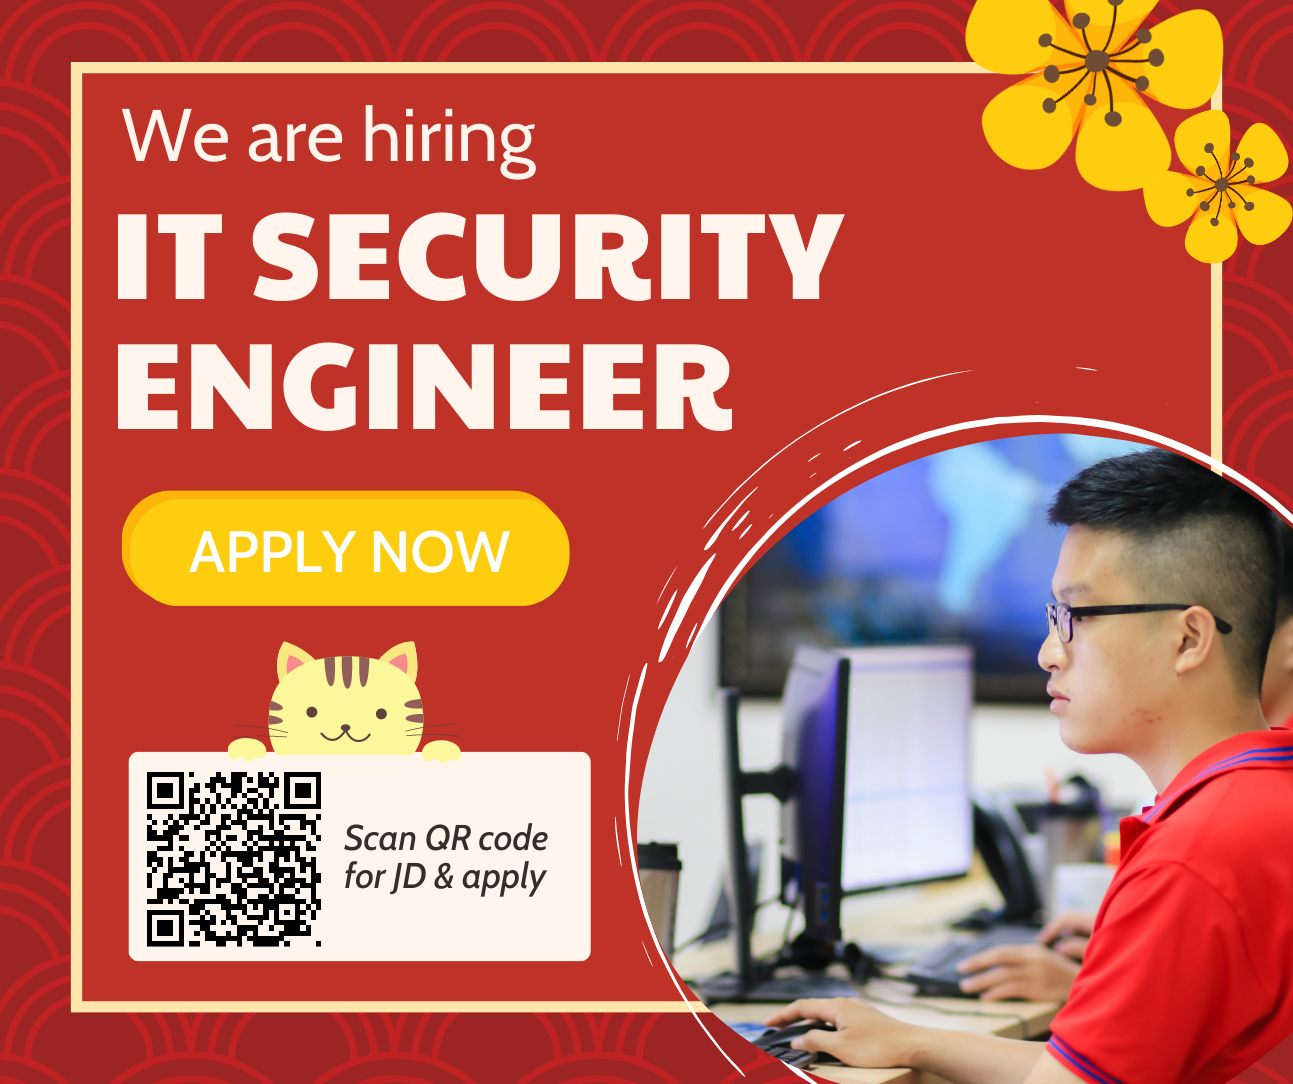 TMA is hiring IT Security Engineer